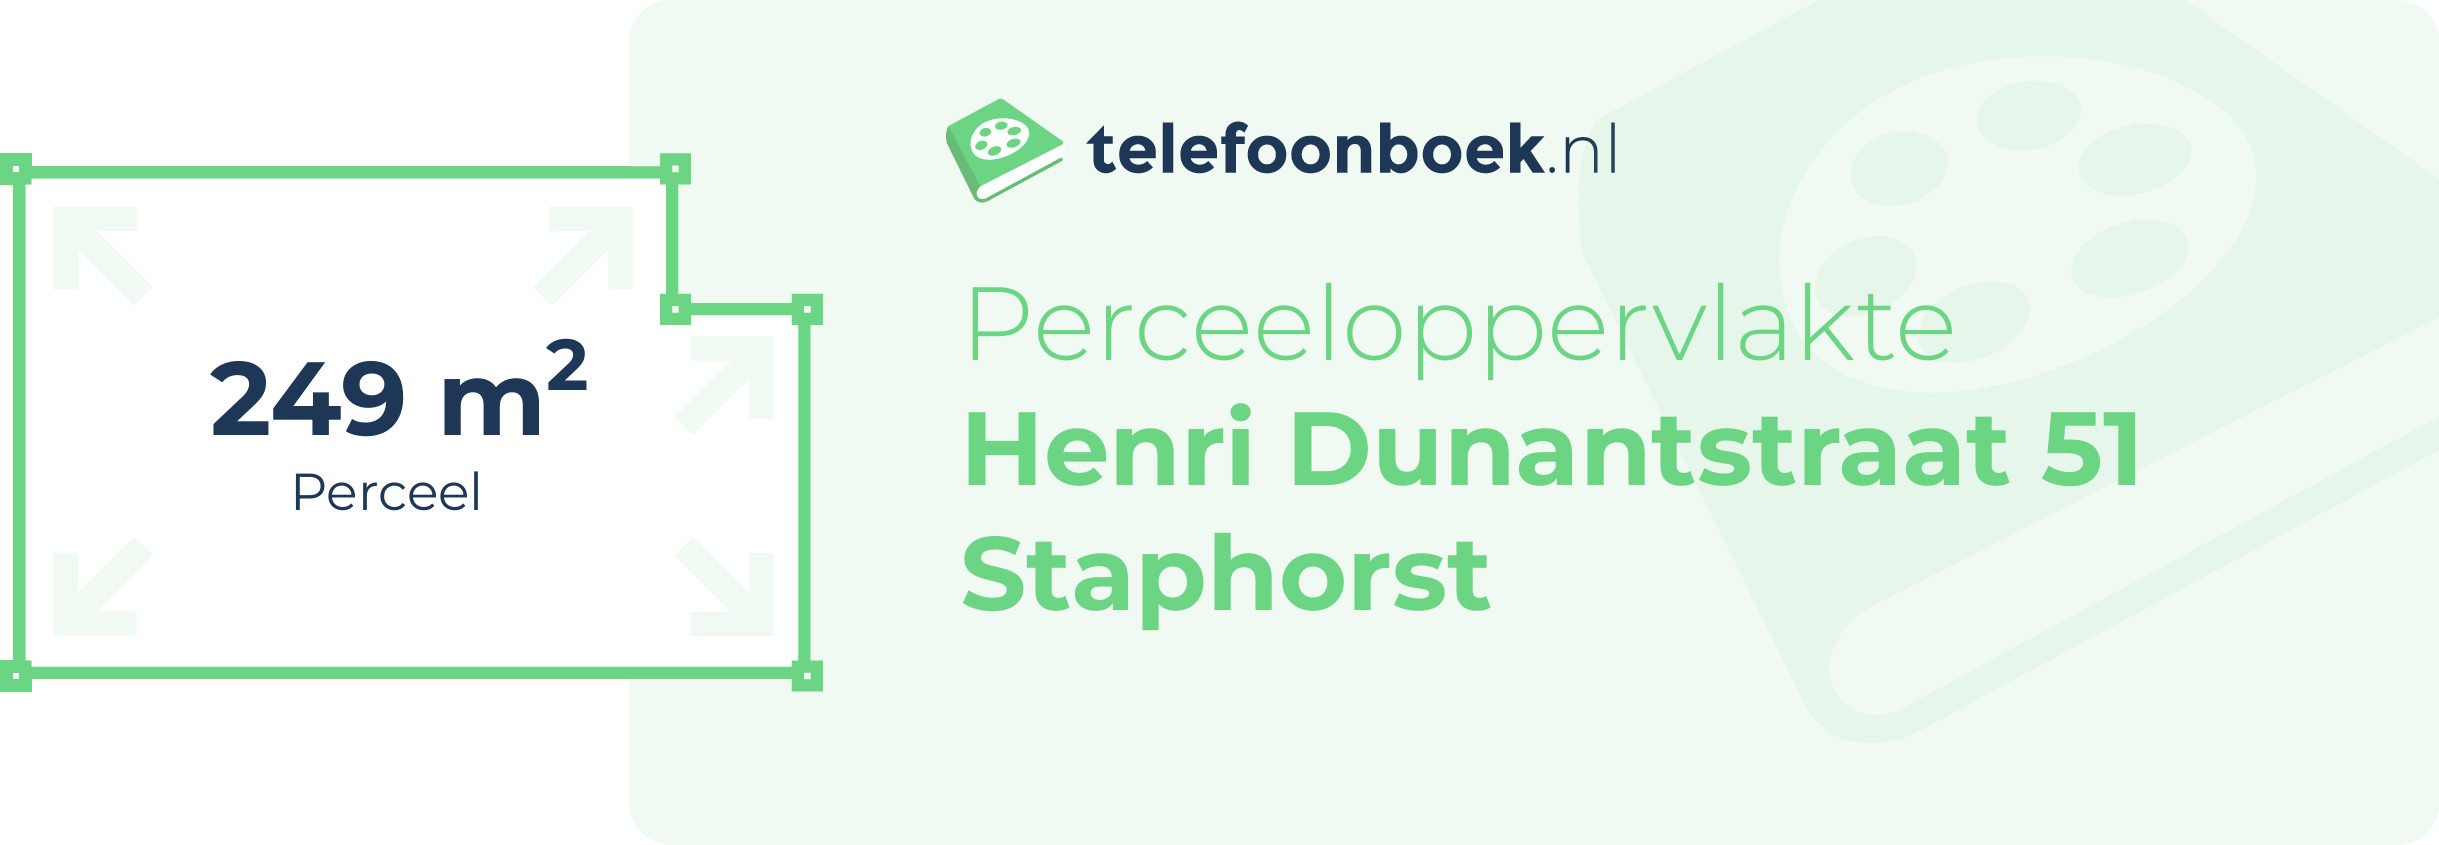 Perceeloppervlakte Henri Dunantstraat 51 Staphorst